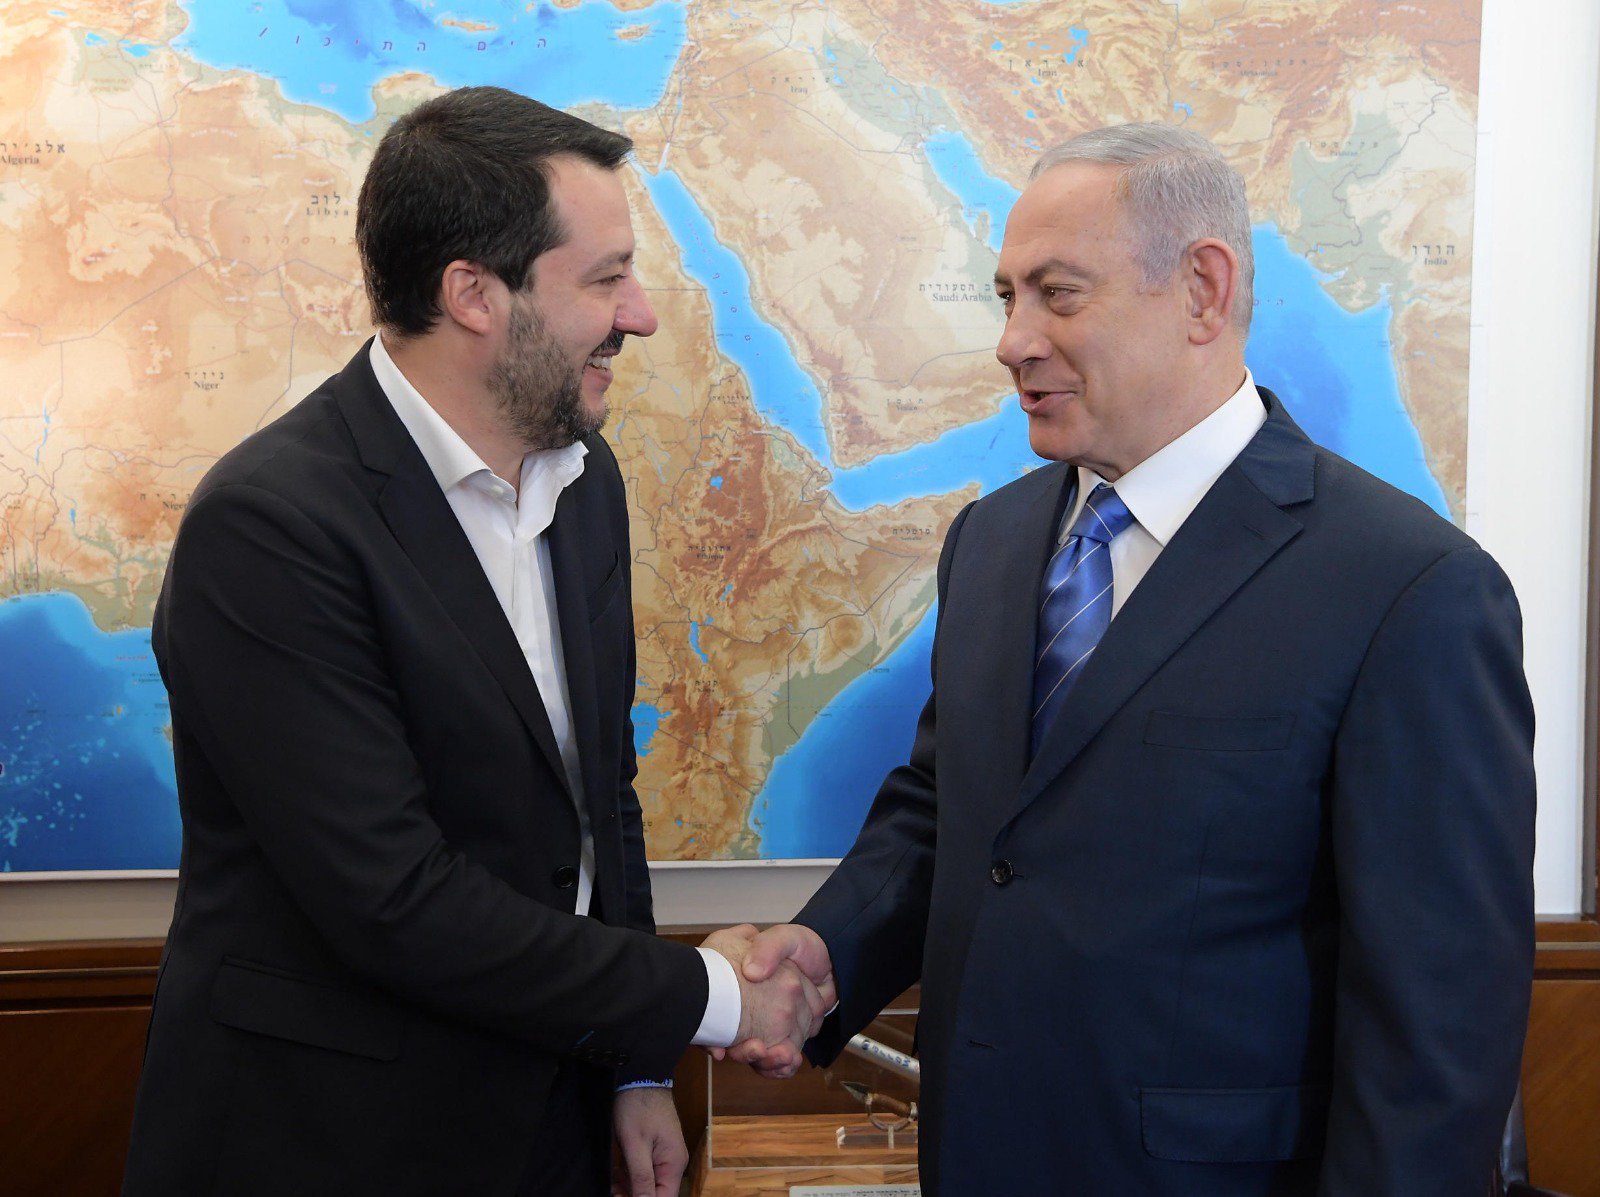 رئيس الوزراء الإسرائيلي بنيامين نتنياهو استقبل وزير الداخلية نائب رئيس الوزراء الإيطالي ماتيو سالفيني